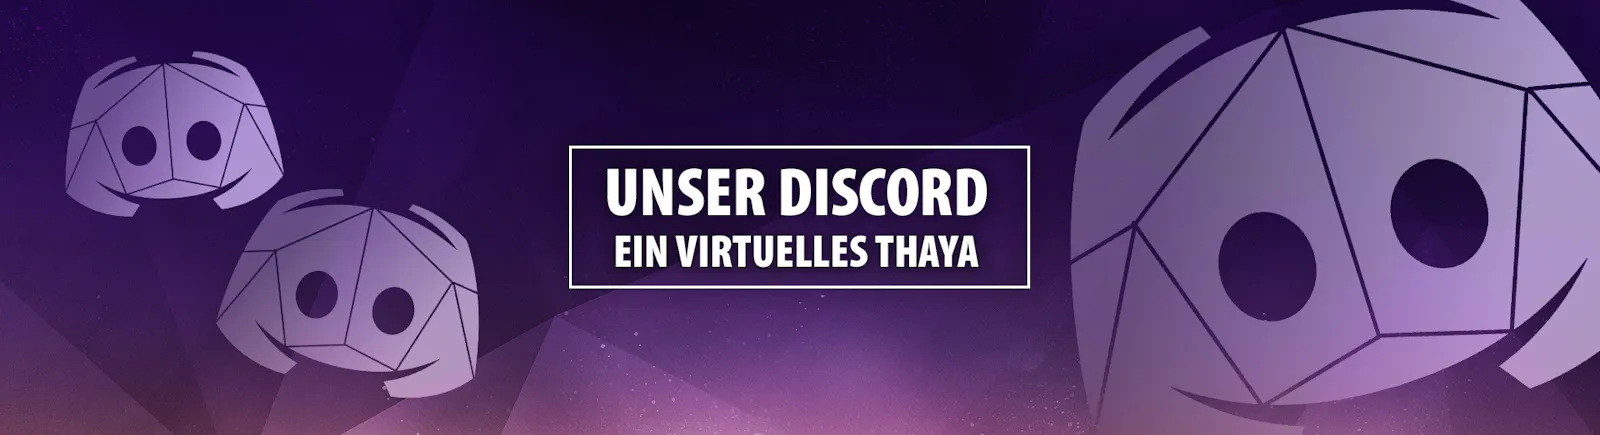 Unser Discord - Ein virtuelles Thaya!